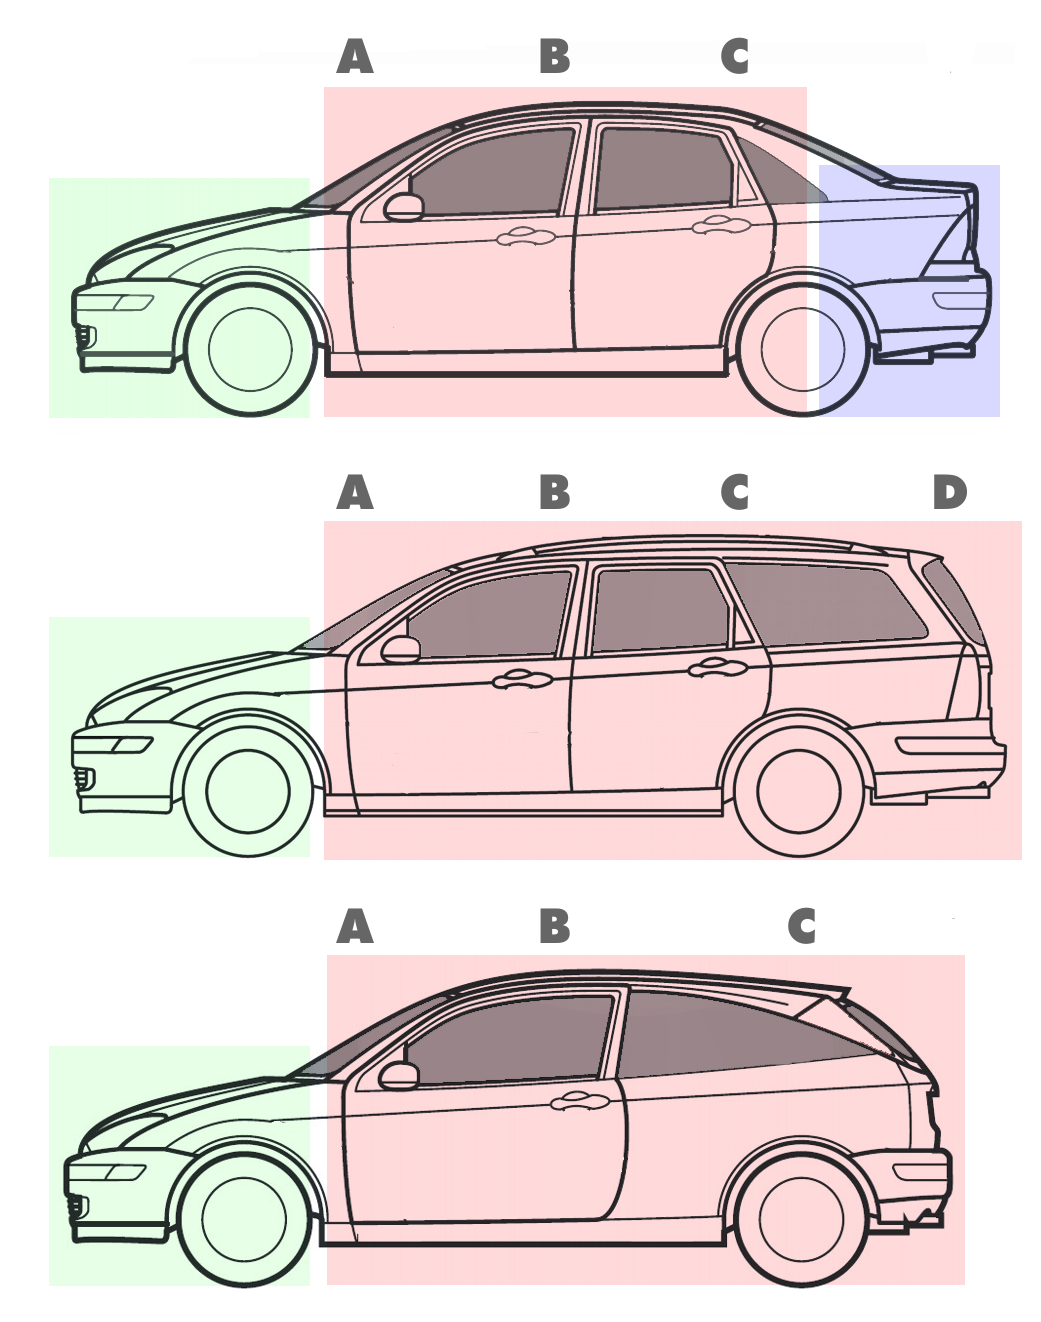 三箱設計(Three-box styling)將車型切割為三個部分：前部的引擎艙...